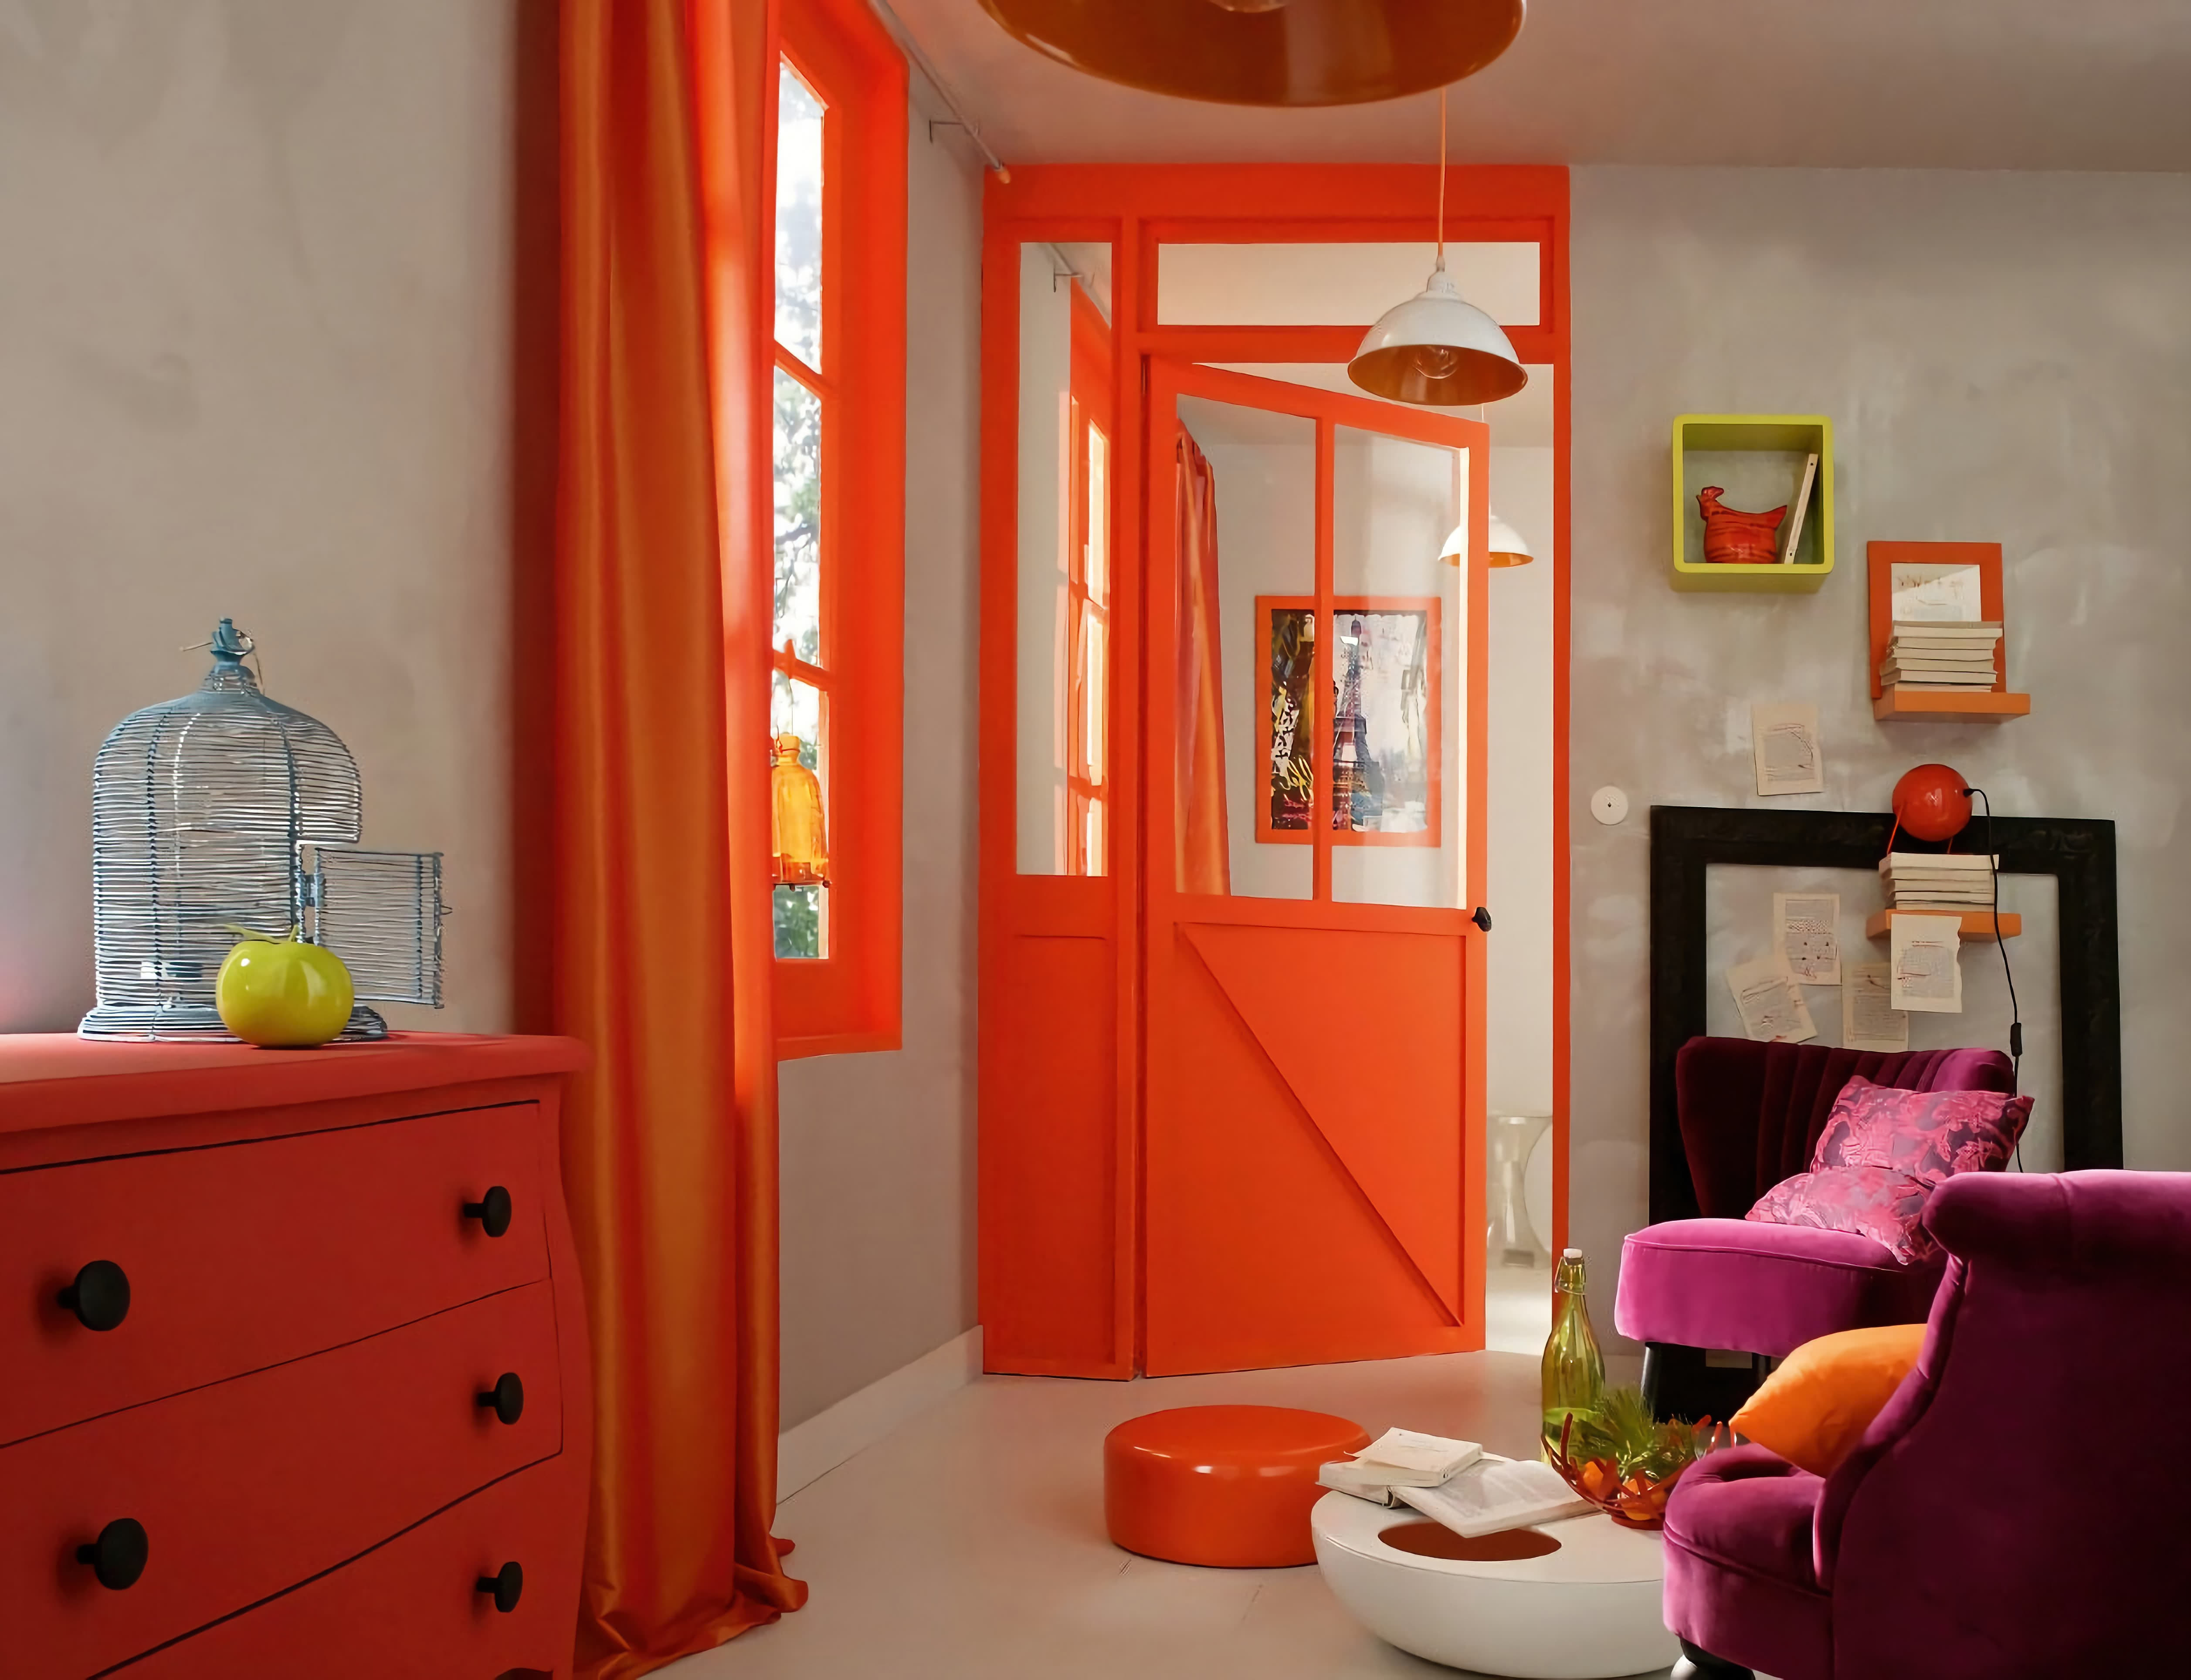 Гостиная. Оранжевые шторы, дверь, окно, шкафчик